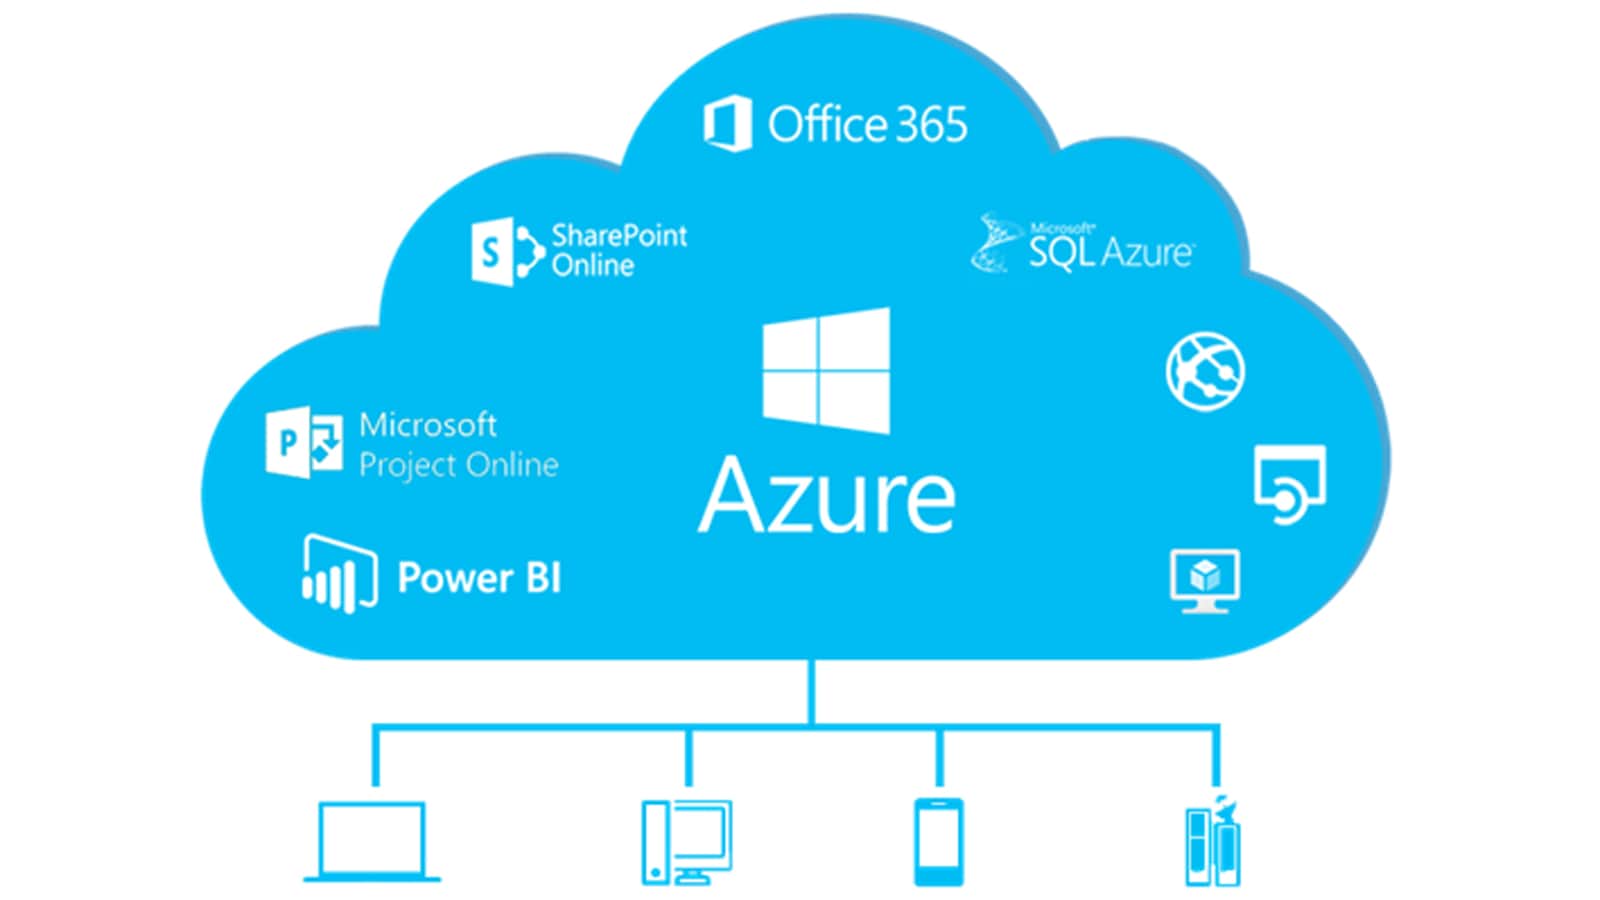 Azure Cloud Services